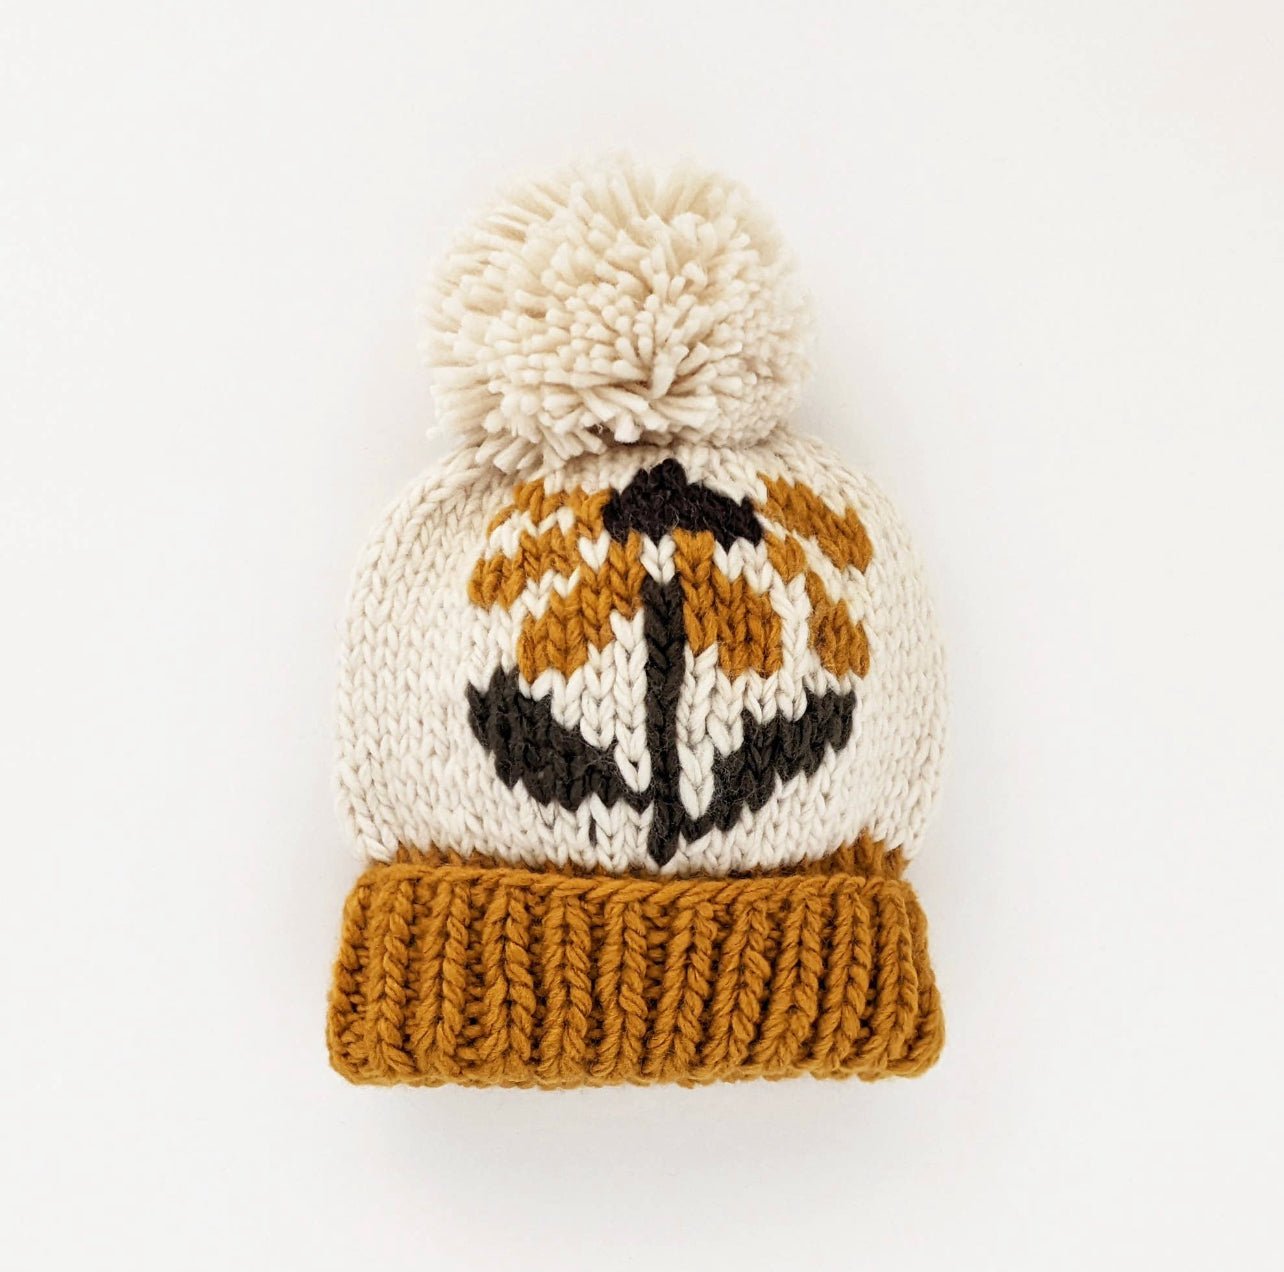 Coneflower Gold Knit Beanie Hat - Wild Child Hat CoHuggalugsBeanie